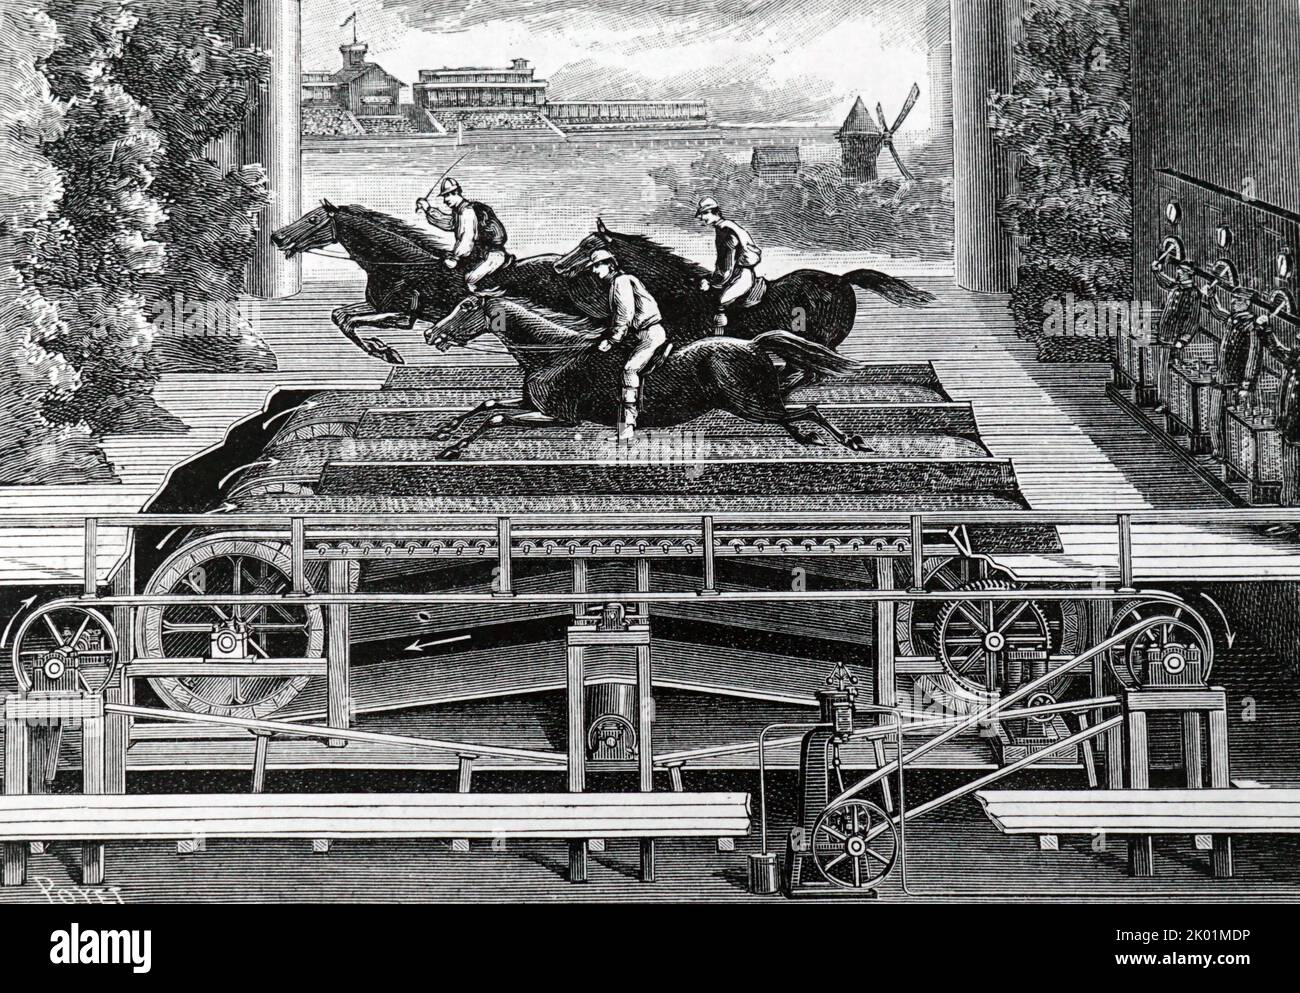 Ausschnitt aus der Bühne des Theatre des Varietes, Paris, das in einer seiner Produktionen eine Pferderennen-Szene inszenierte. Stockfoto